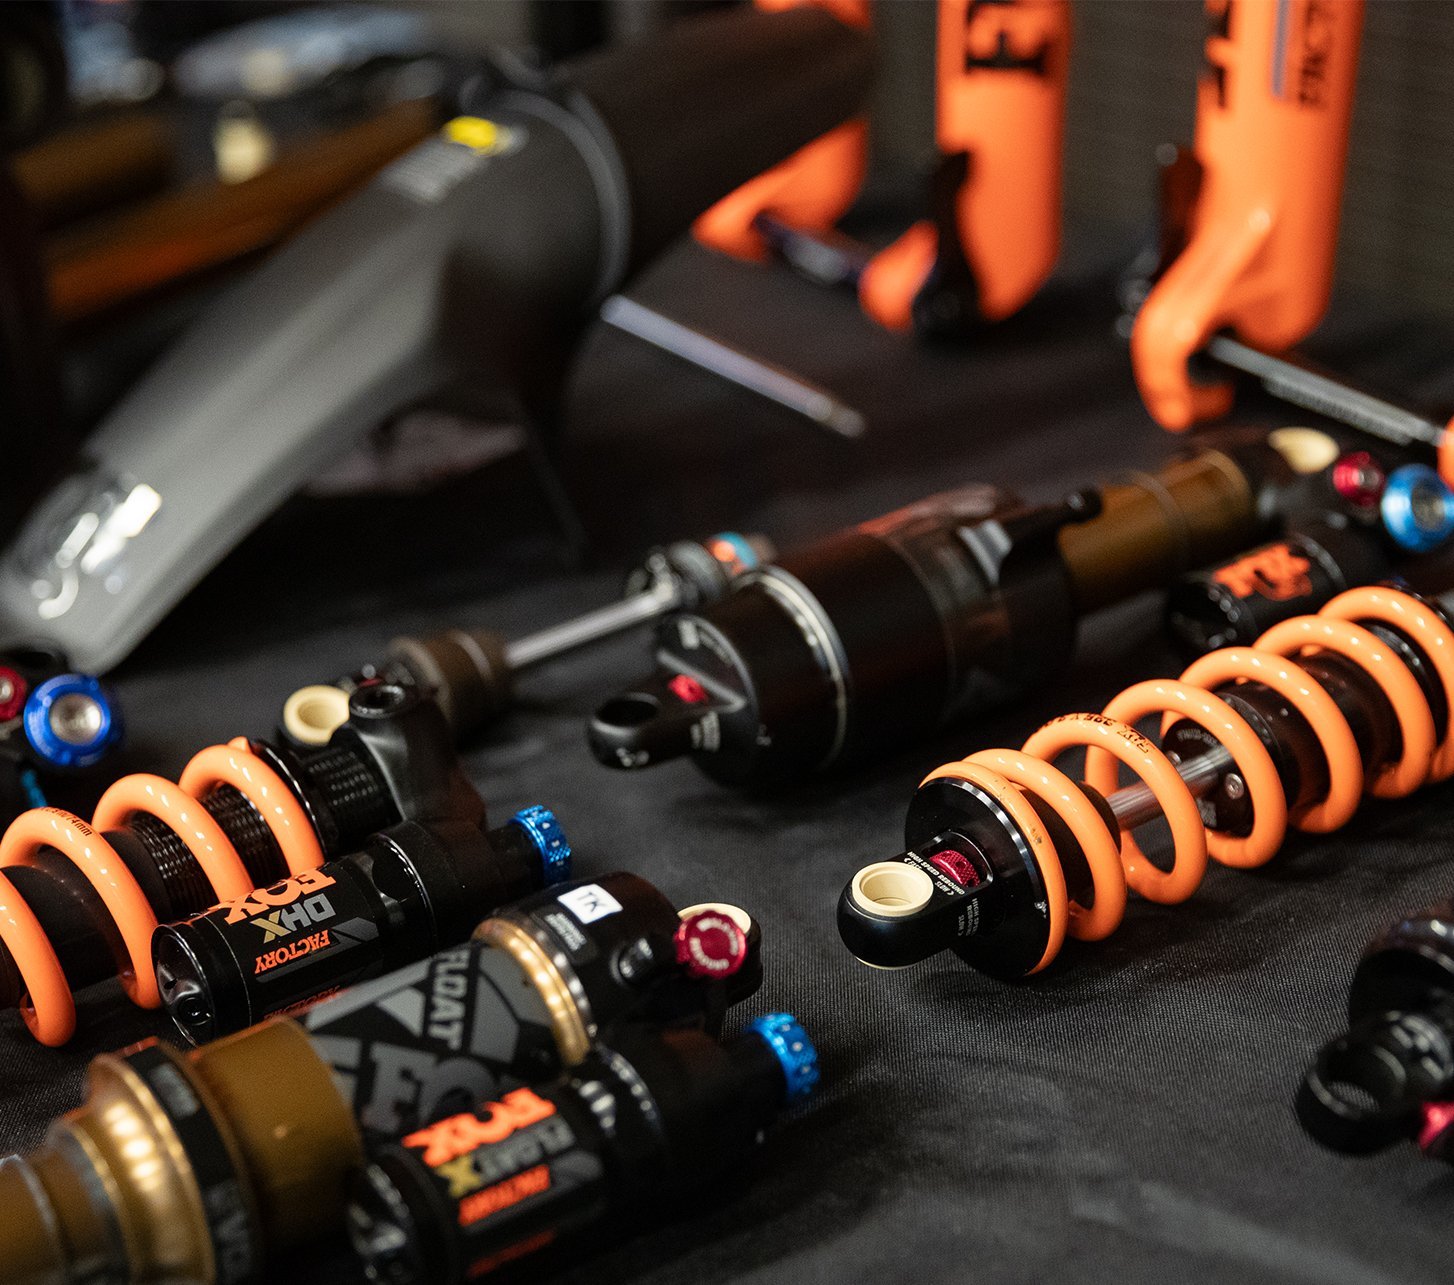 Fox Racing Shox Ersatzteile für Dämpfer und Federgabeln liegen auf einer Werkbank.